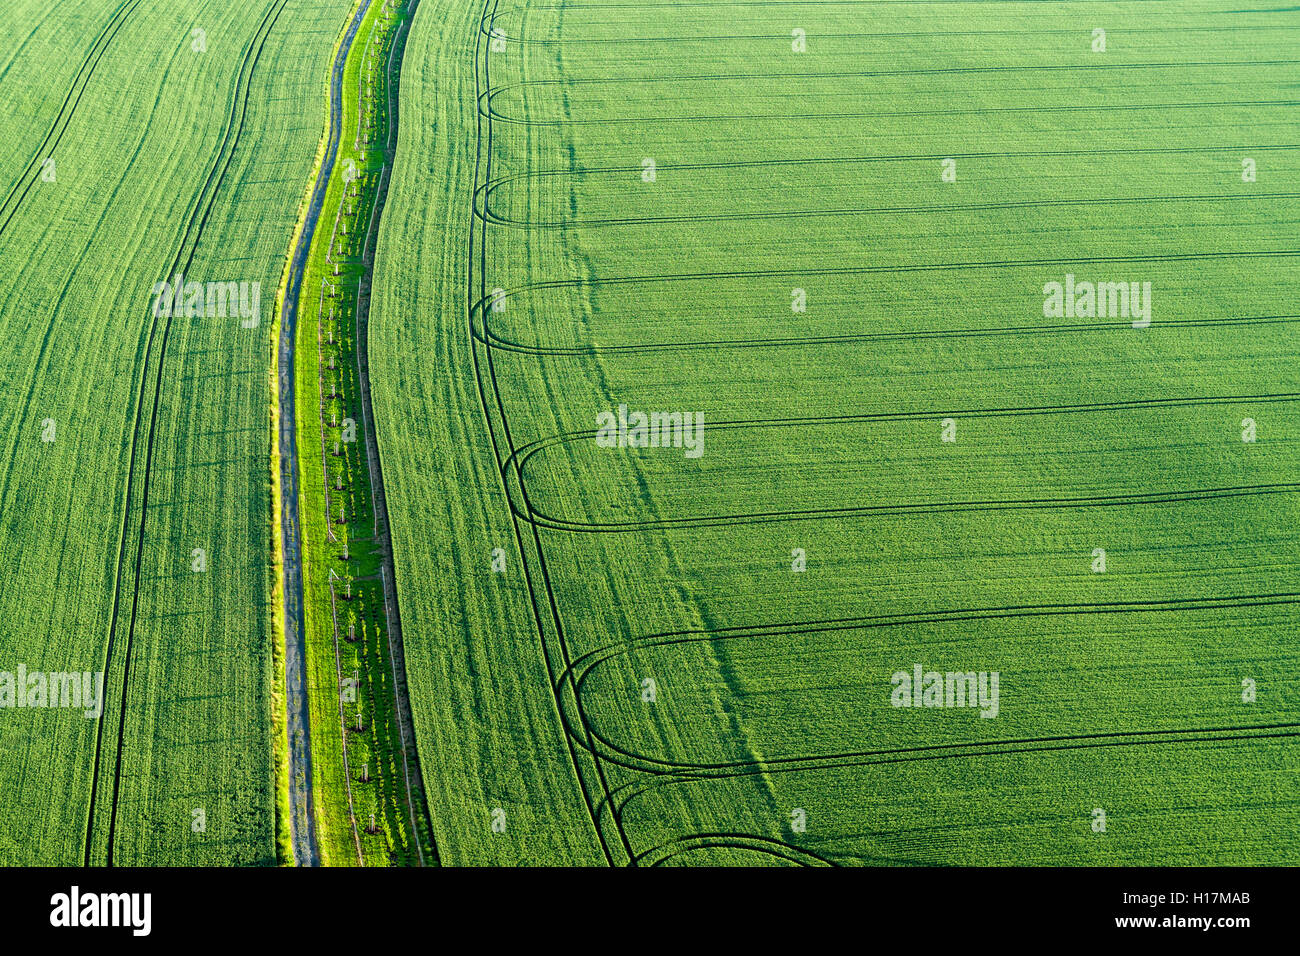 Fußweg und den Titel von einem Traktor auf ein grünes Feld, Königstein, Sachsen, Deutschland Stockfoto